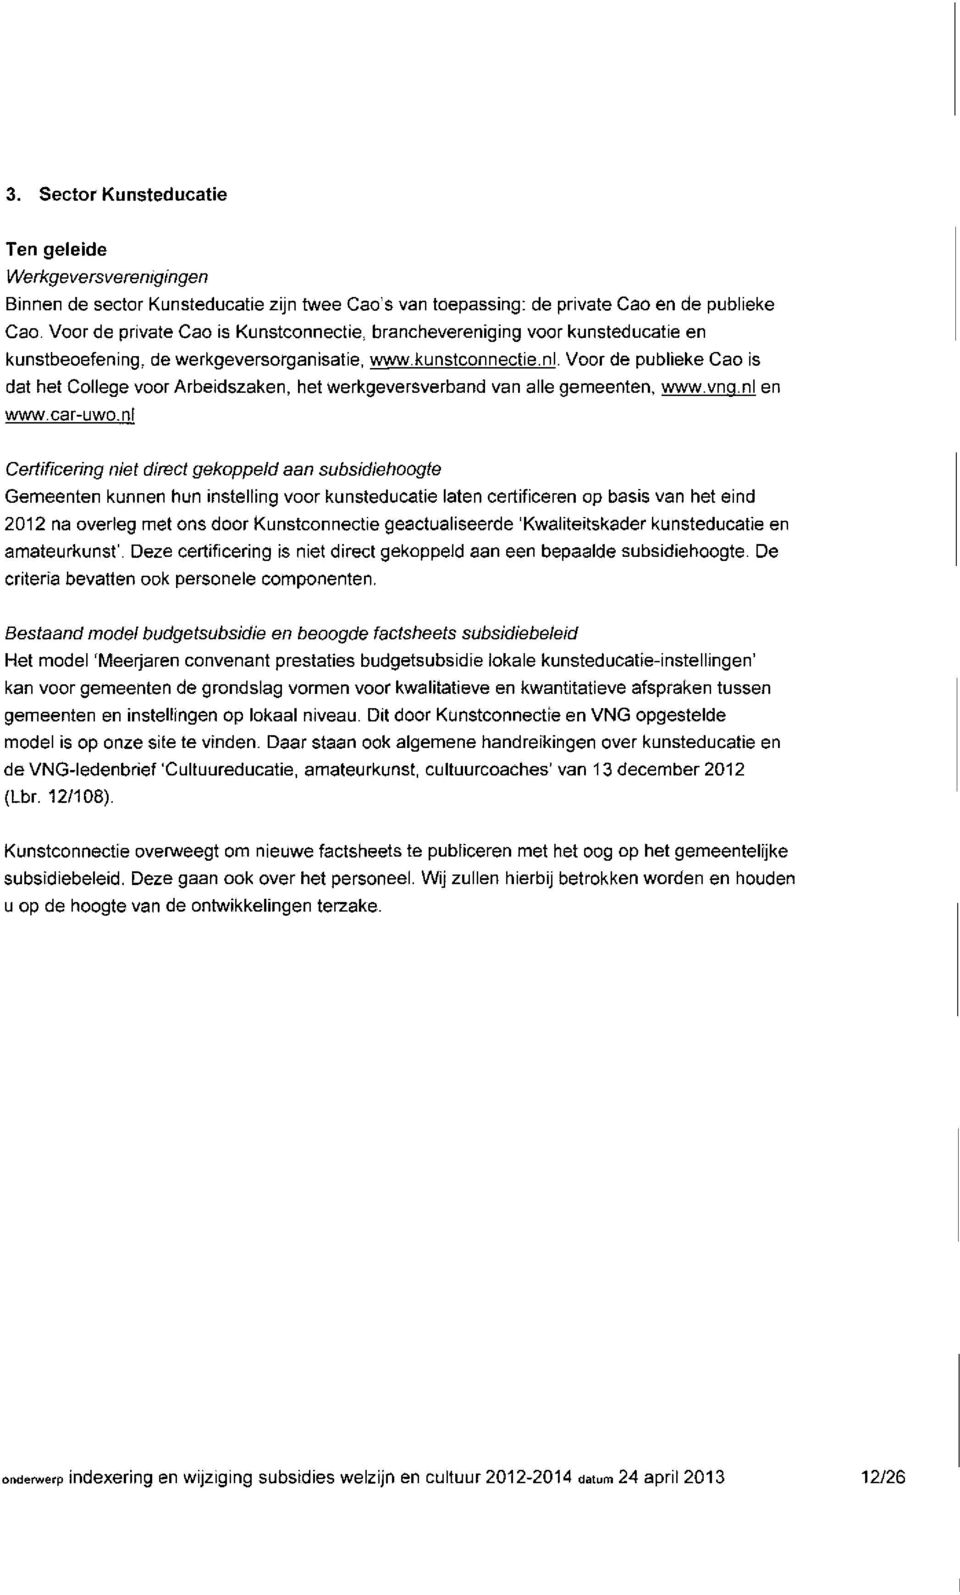 Voor de publieke Cao is dat het College voor Arbeidszaken, het werkgevers verband van alle gemeenten, www.vnq.nl en www.car-uwo.